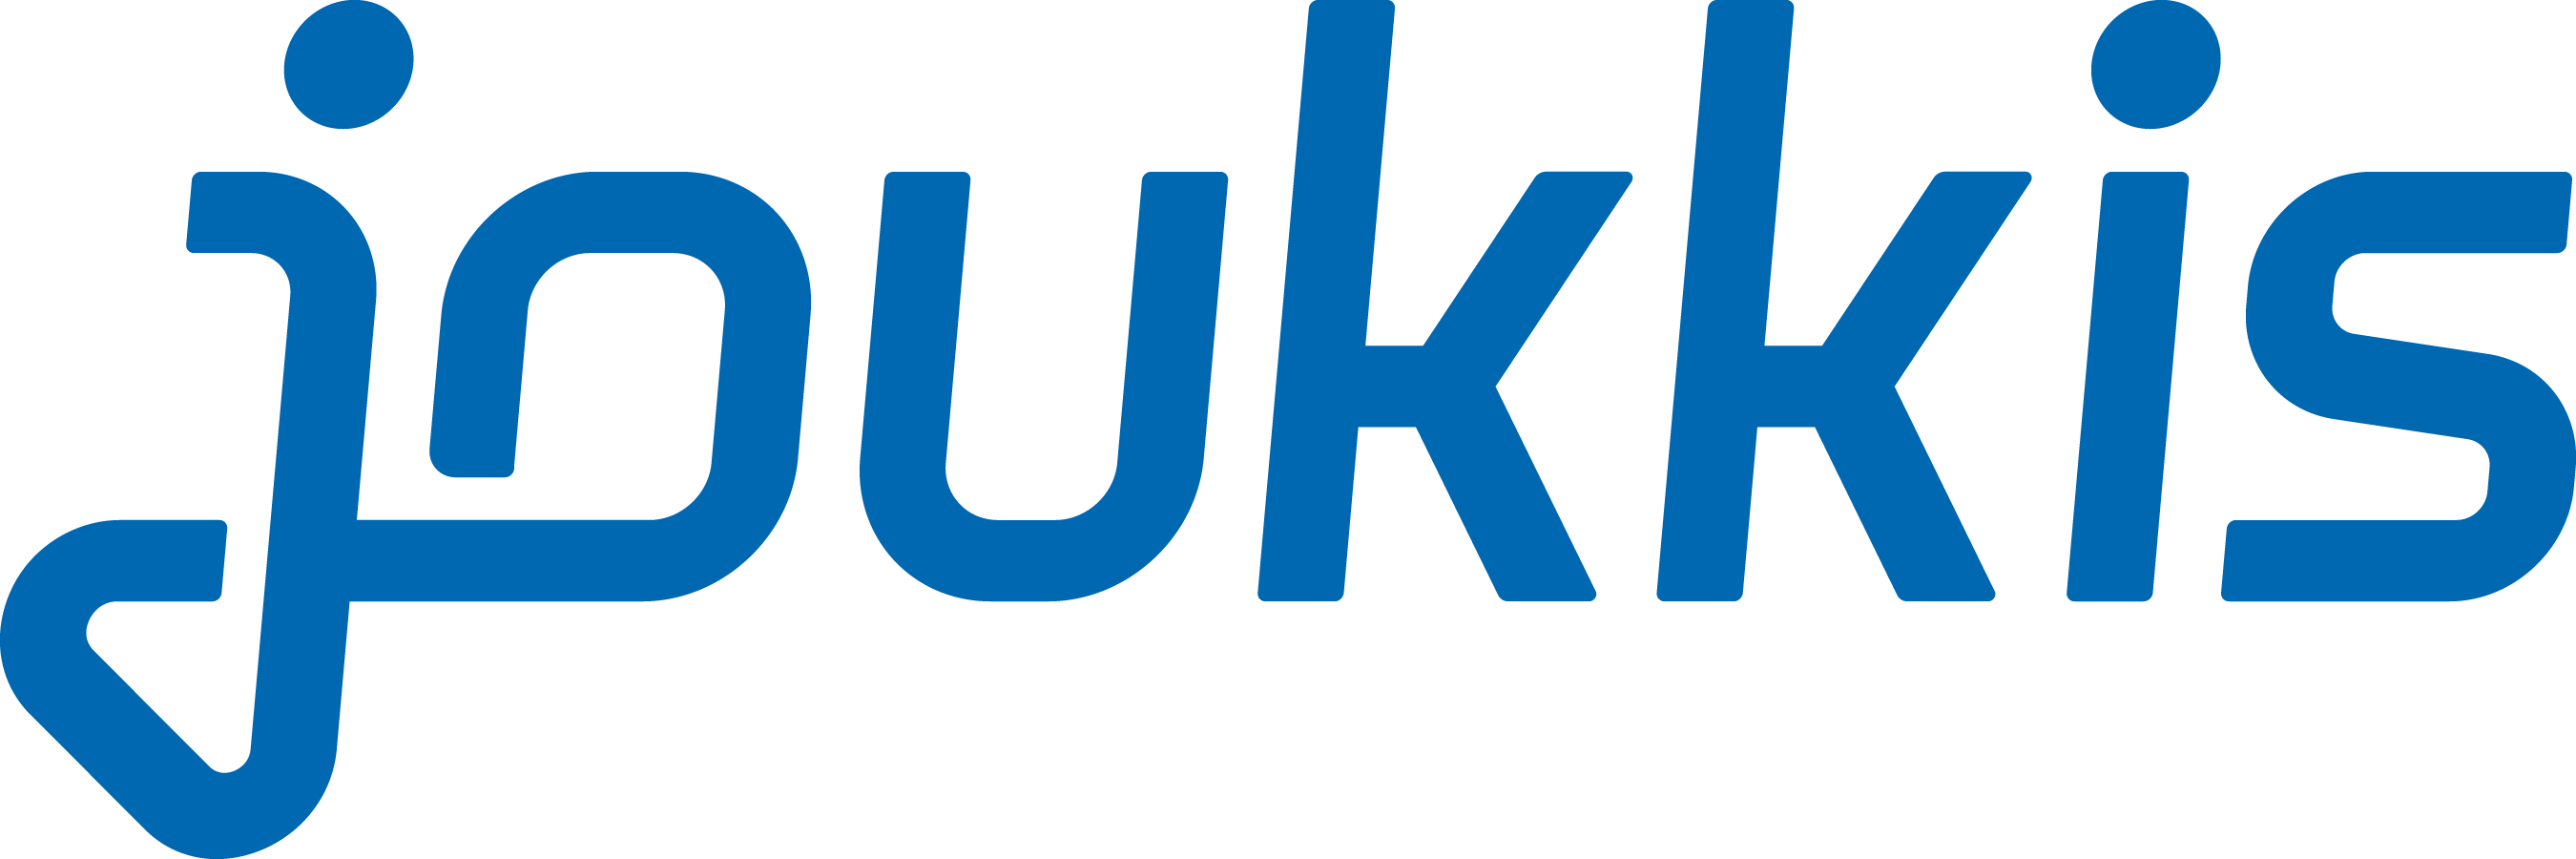 Joukkis-logo